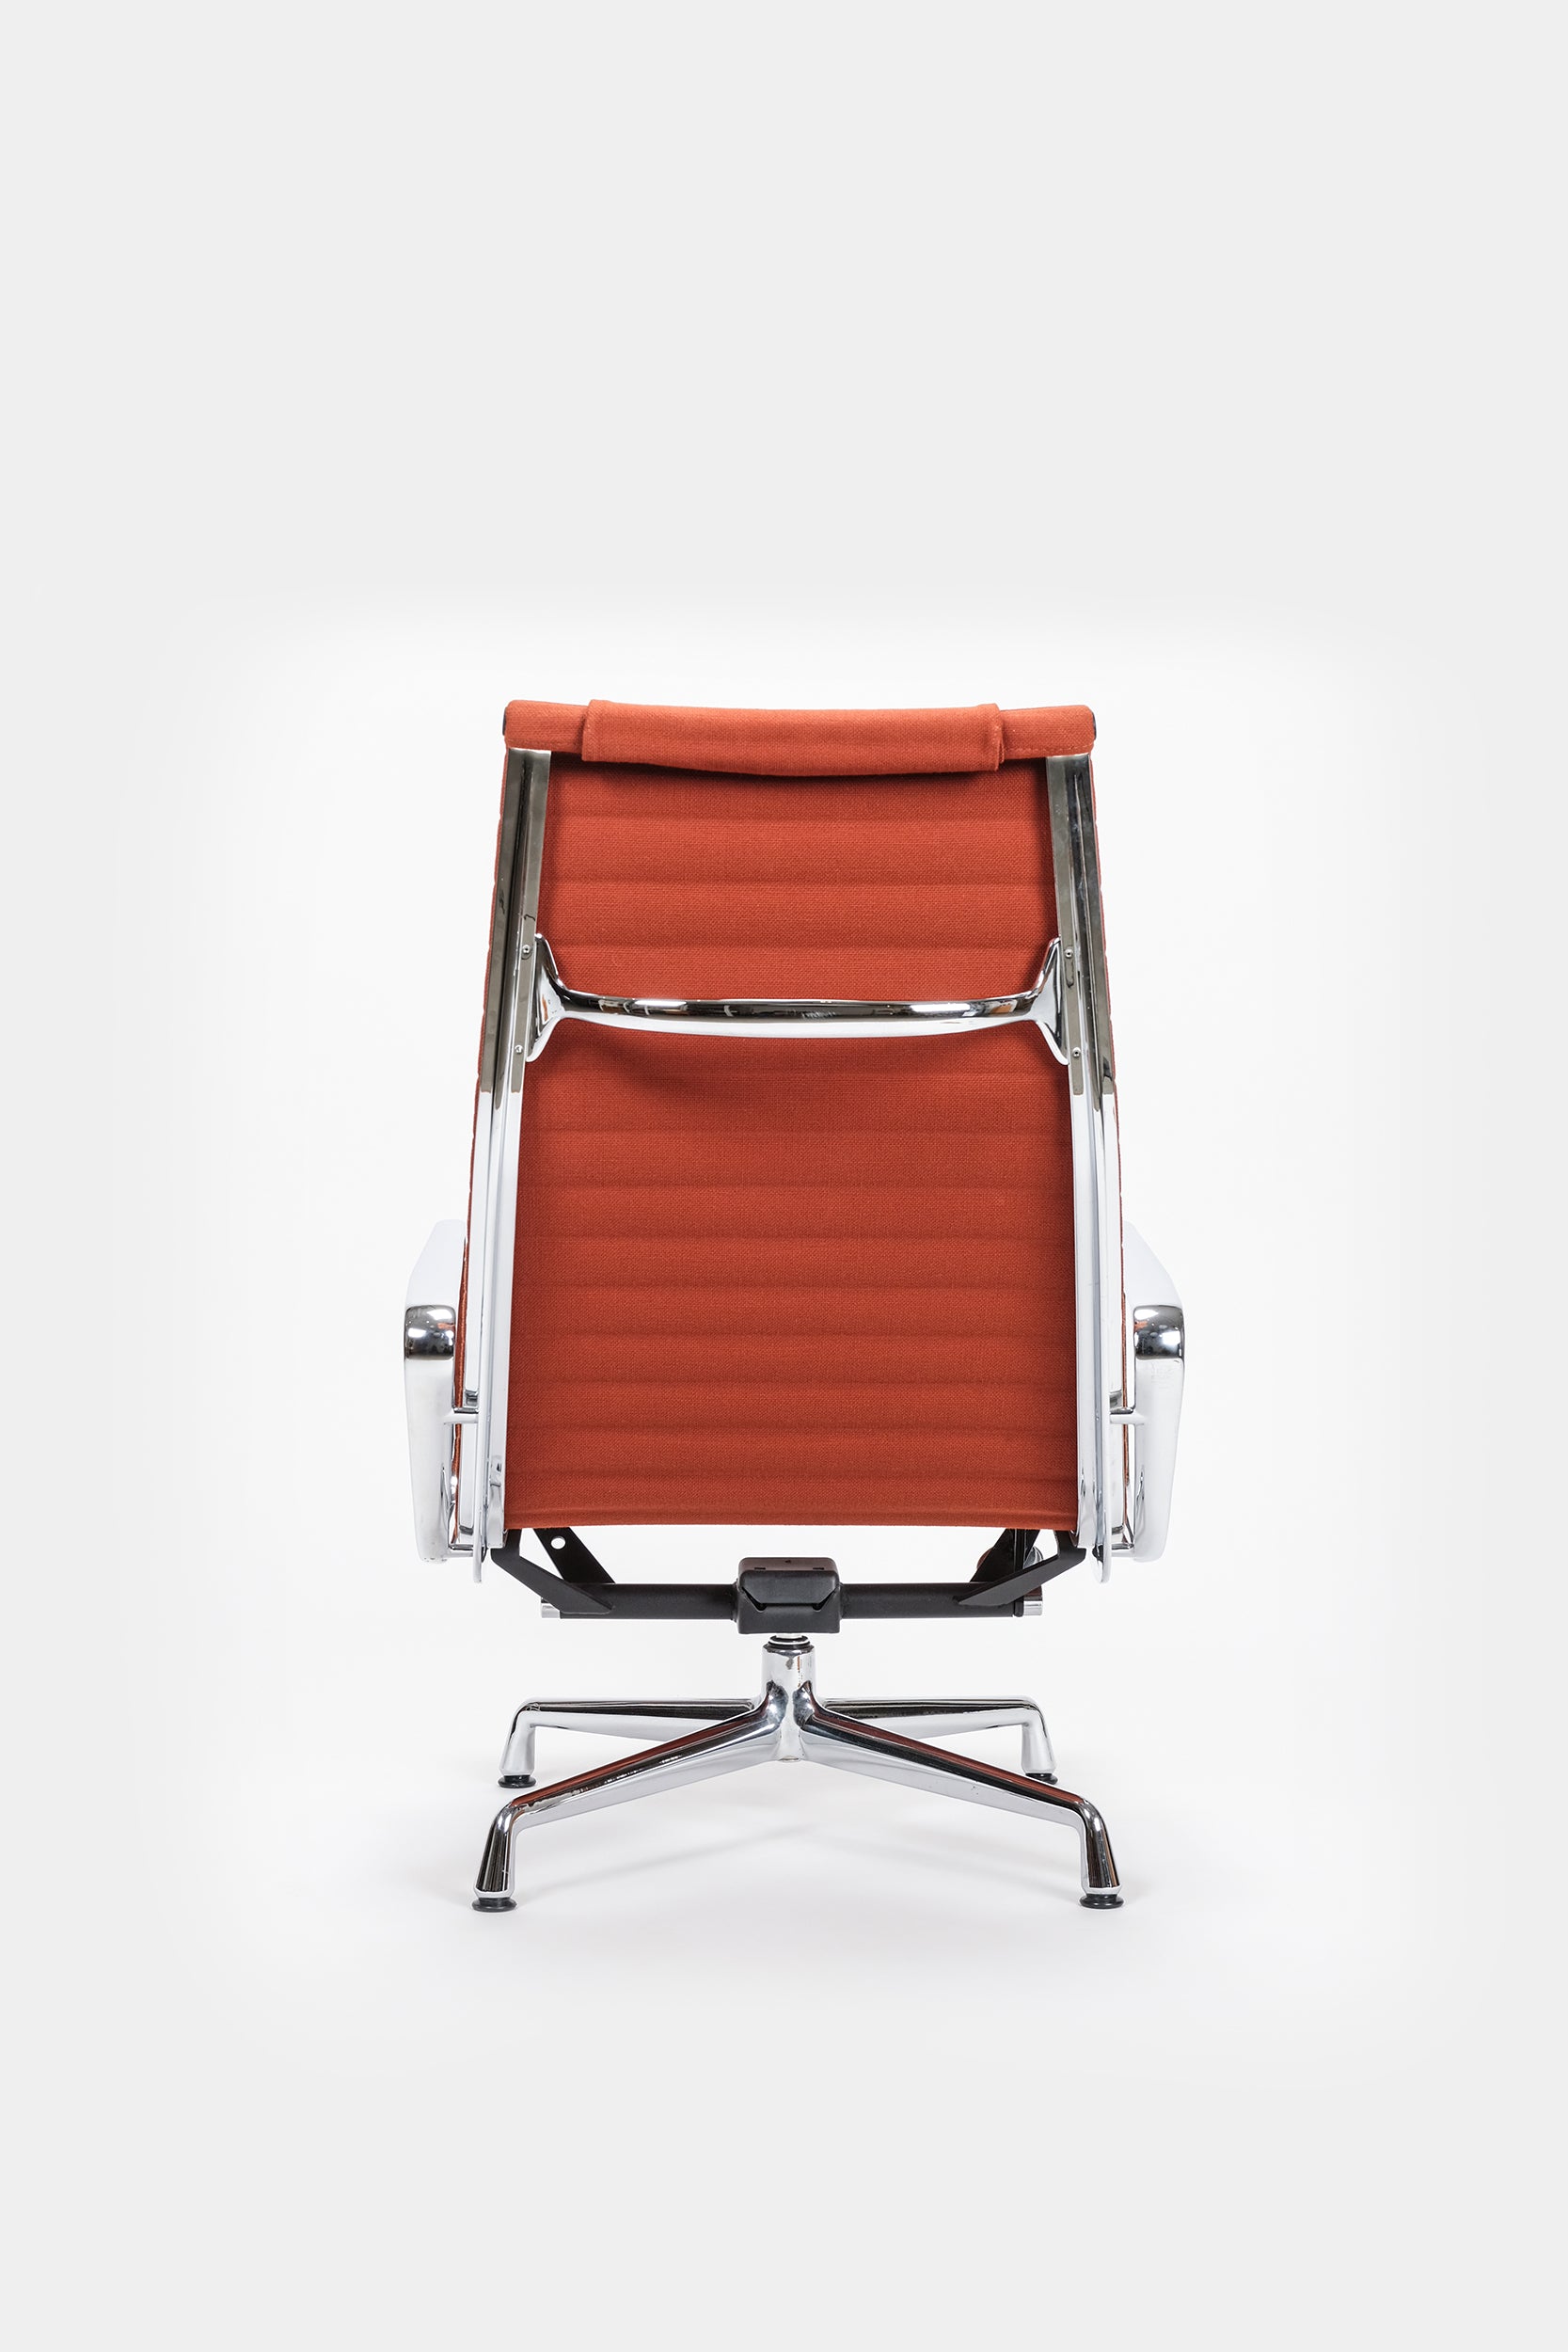 Eames EA 124 Aluminium Chair Drehsessel, Vitra